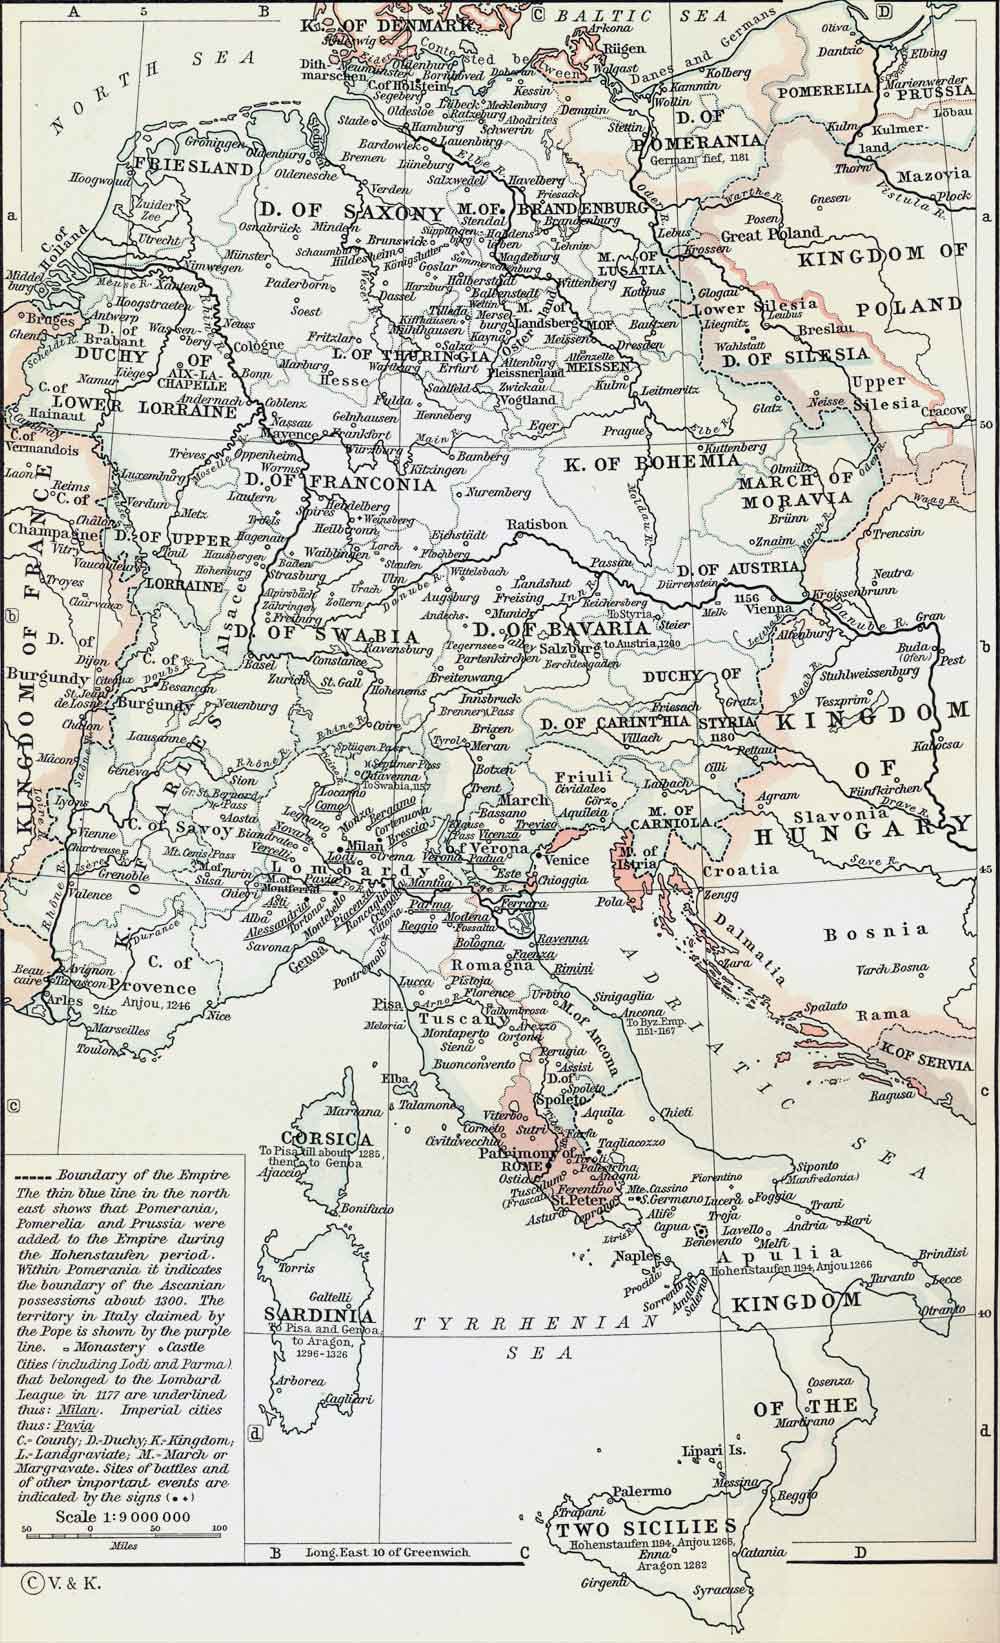 The Holy Roman Empire under Hohenstaufen